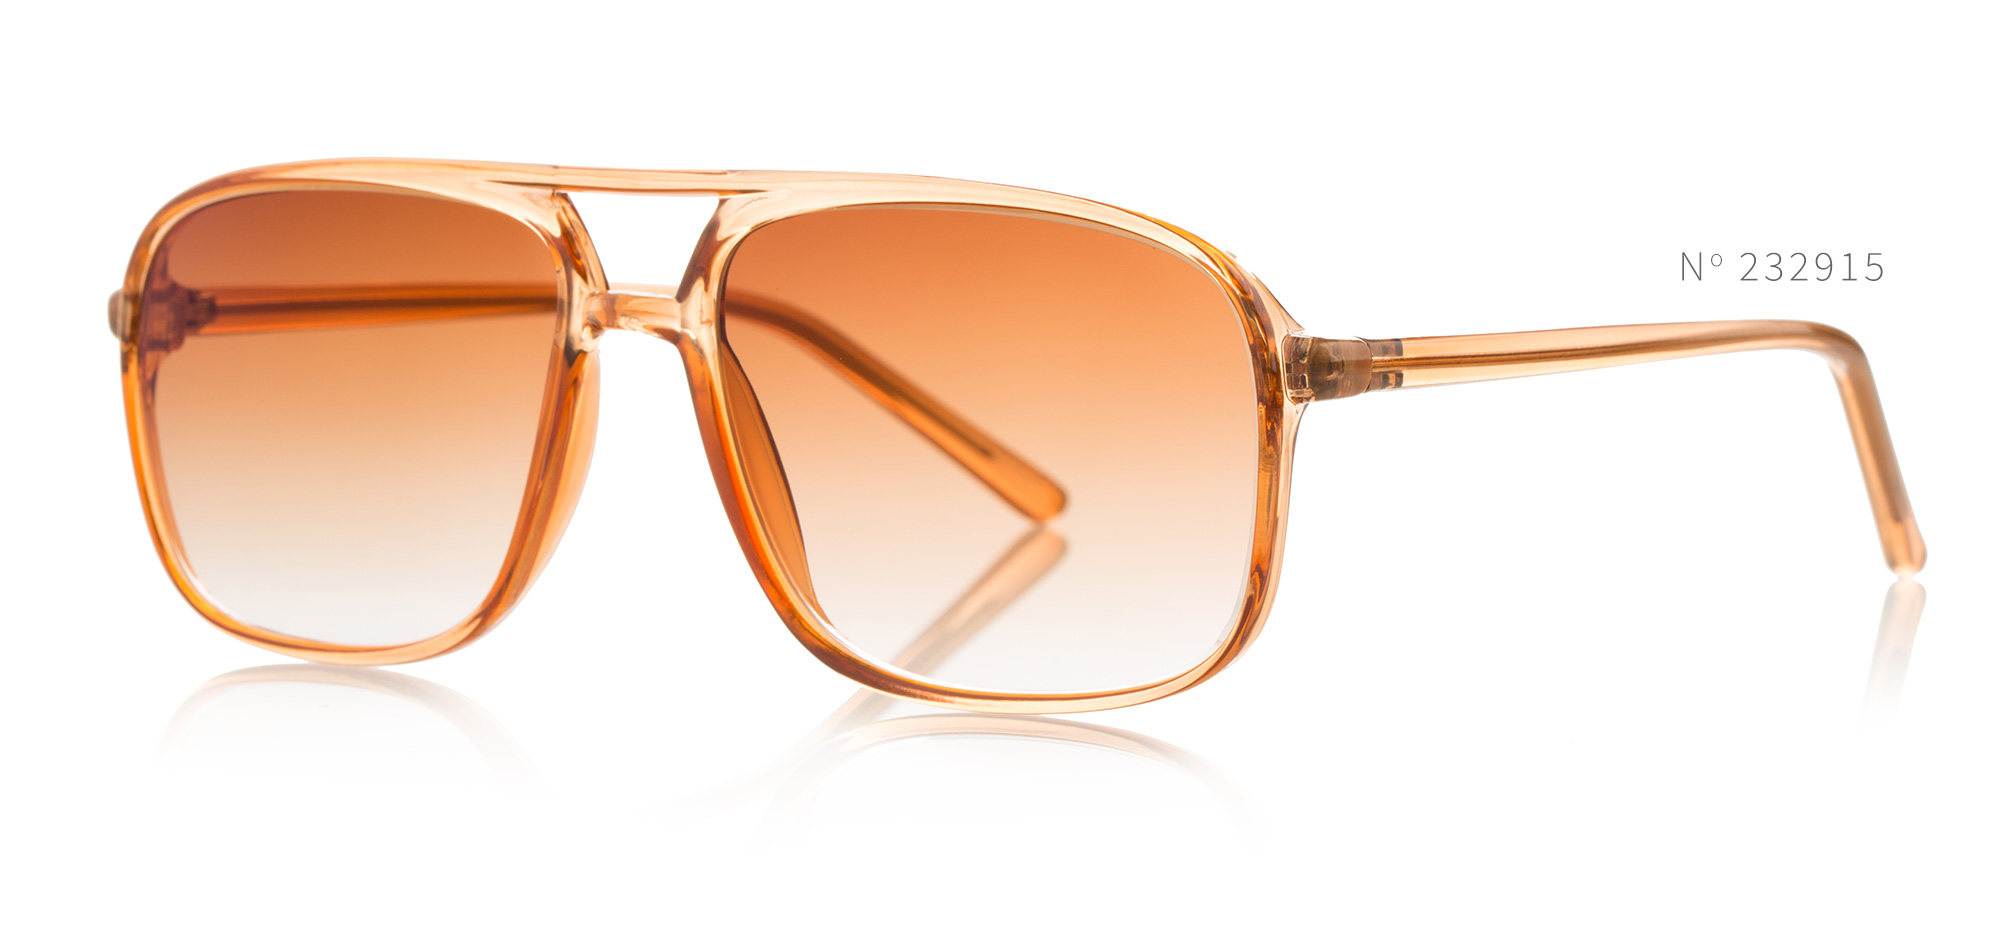 whiskey-brown-acetate-aviator-sunglasses-tq-232915